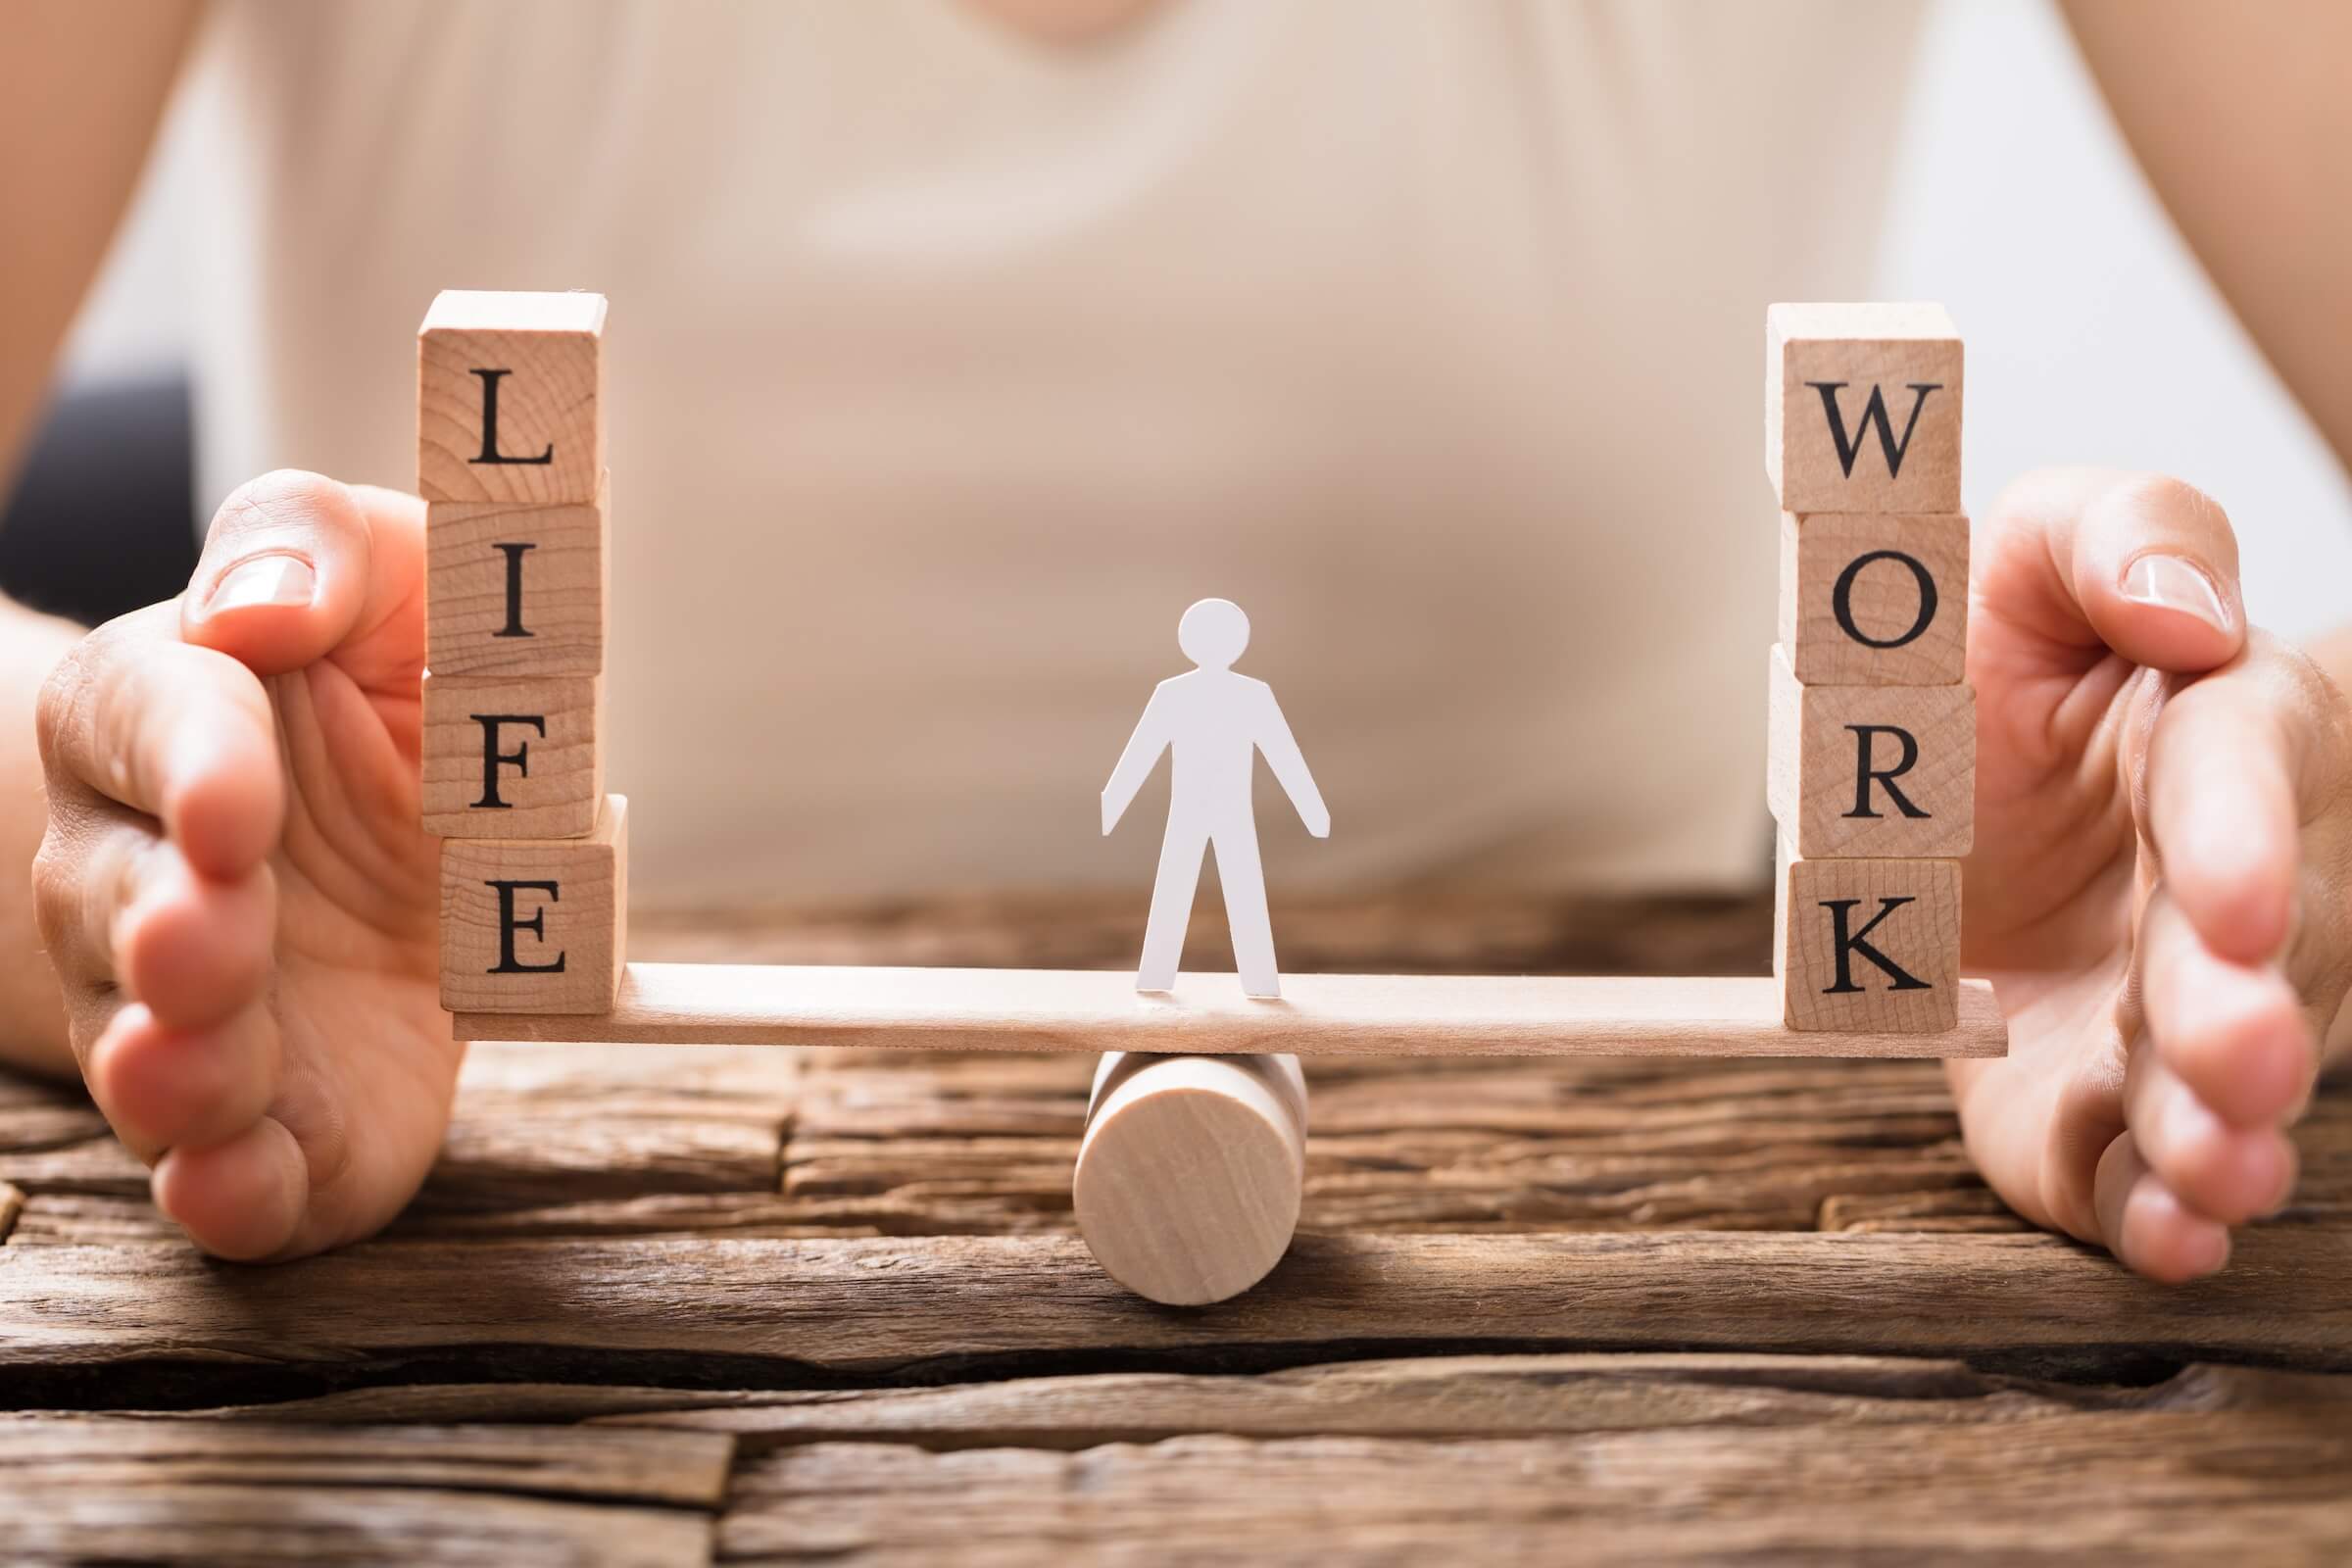 Równoważnia z napisami "LIFE" i "WORK" po obu stronach oraz figurka człowieka w środku, co symbolizuje równowagę między życiem a pracą